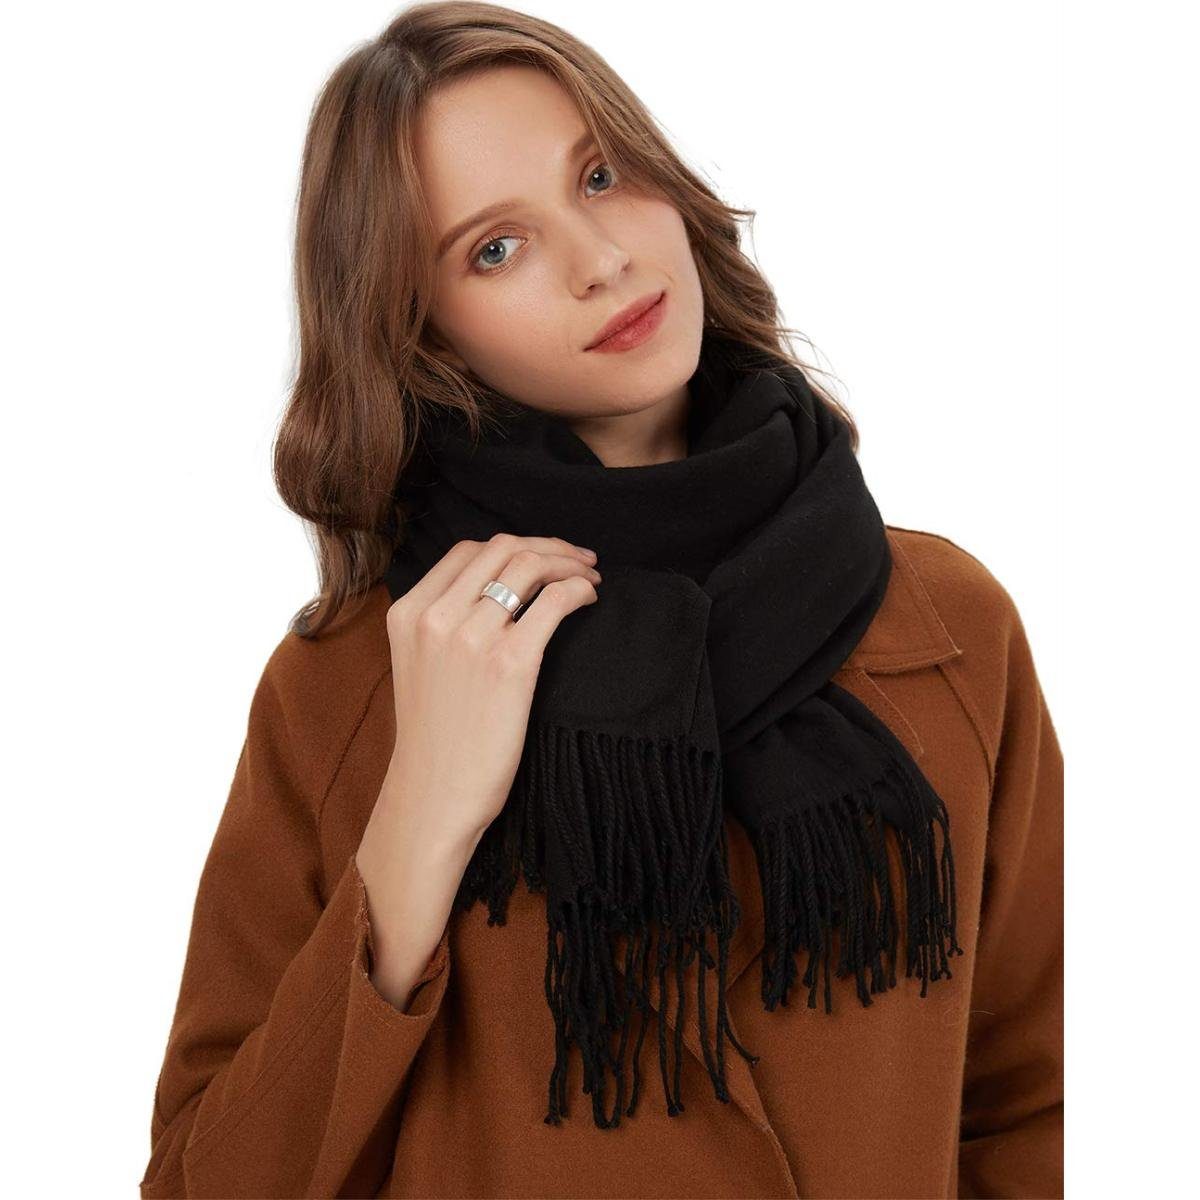 Jormftte Halstuch Schal Warm Herbst Winter unifarben Baumwolle mit quasten,Einfarbig Schwarz